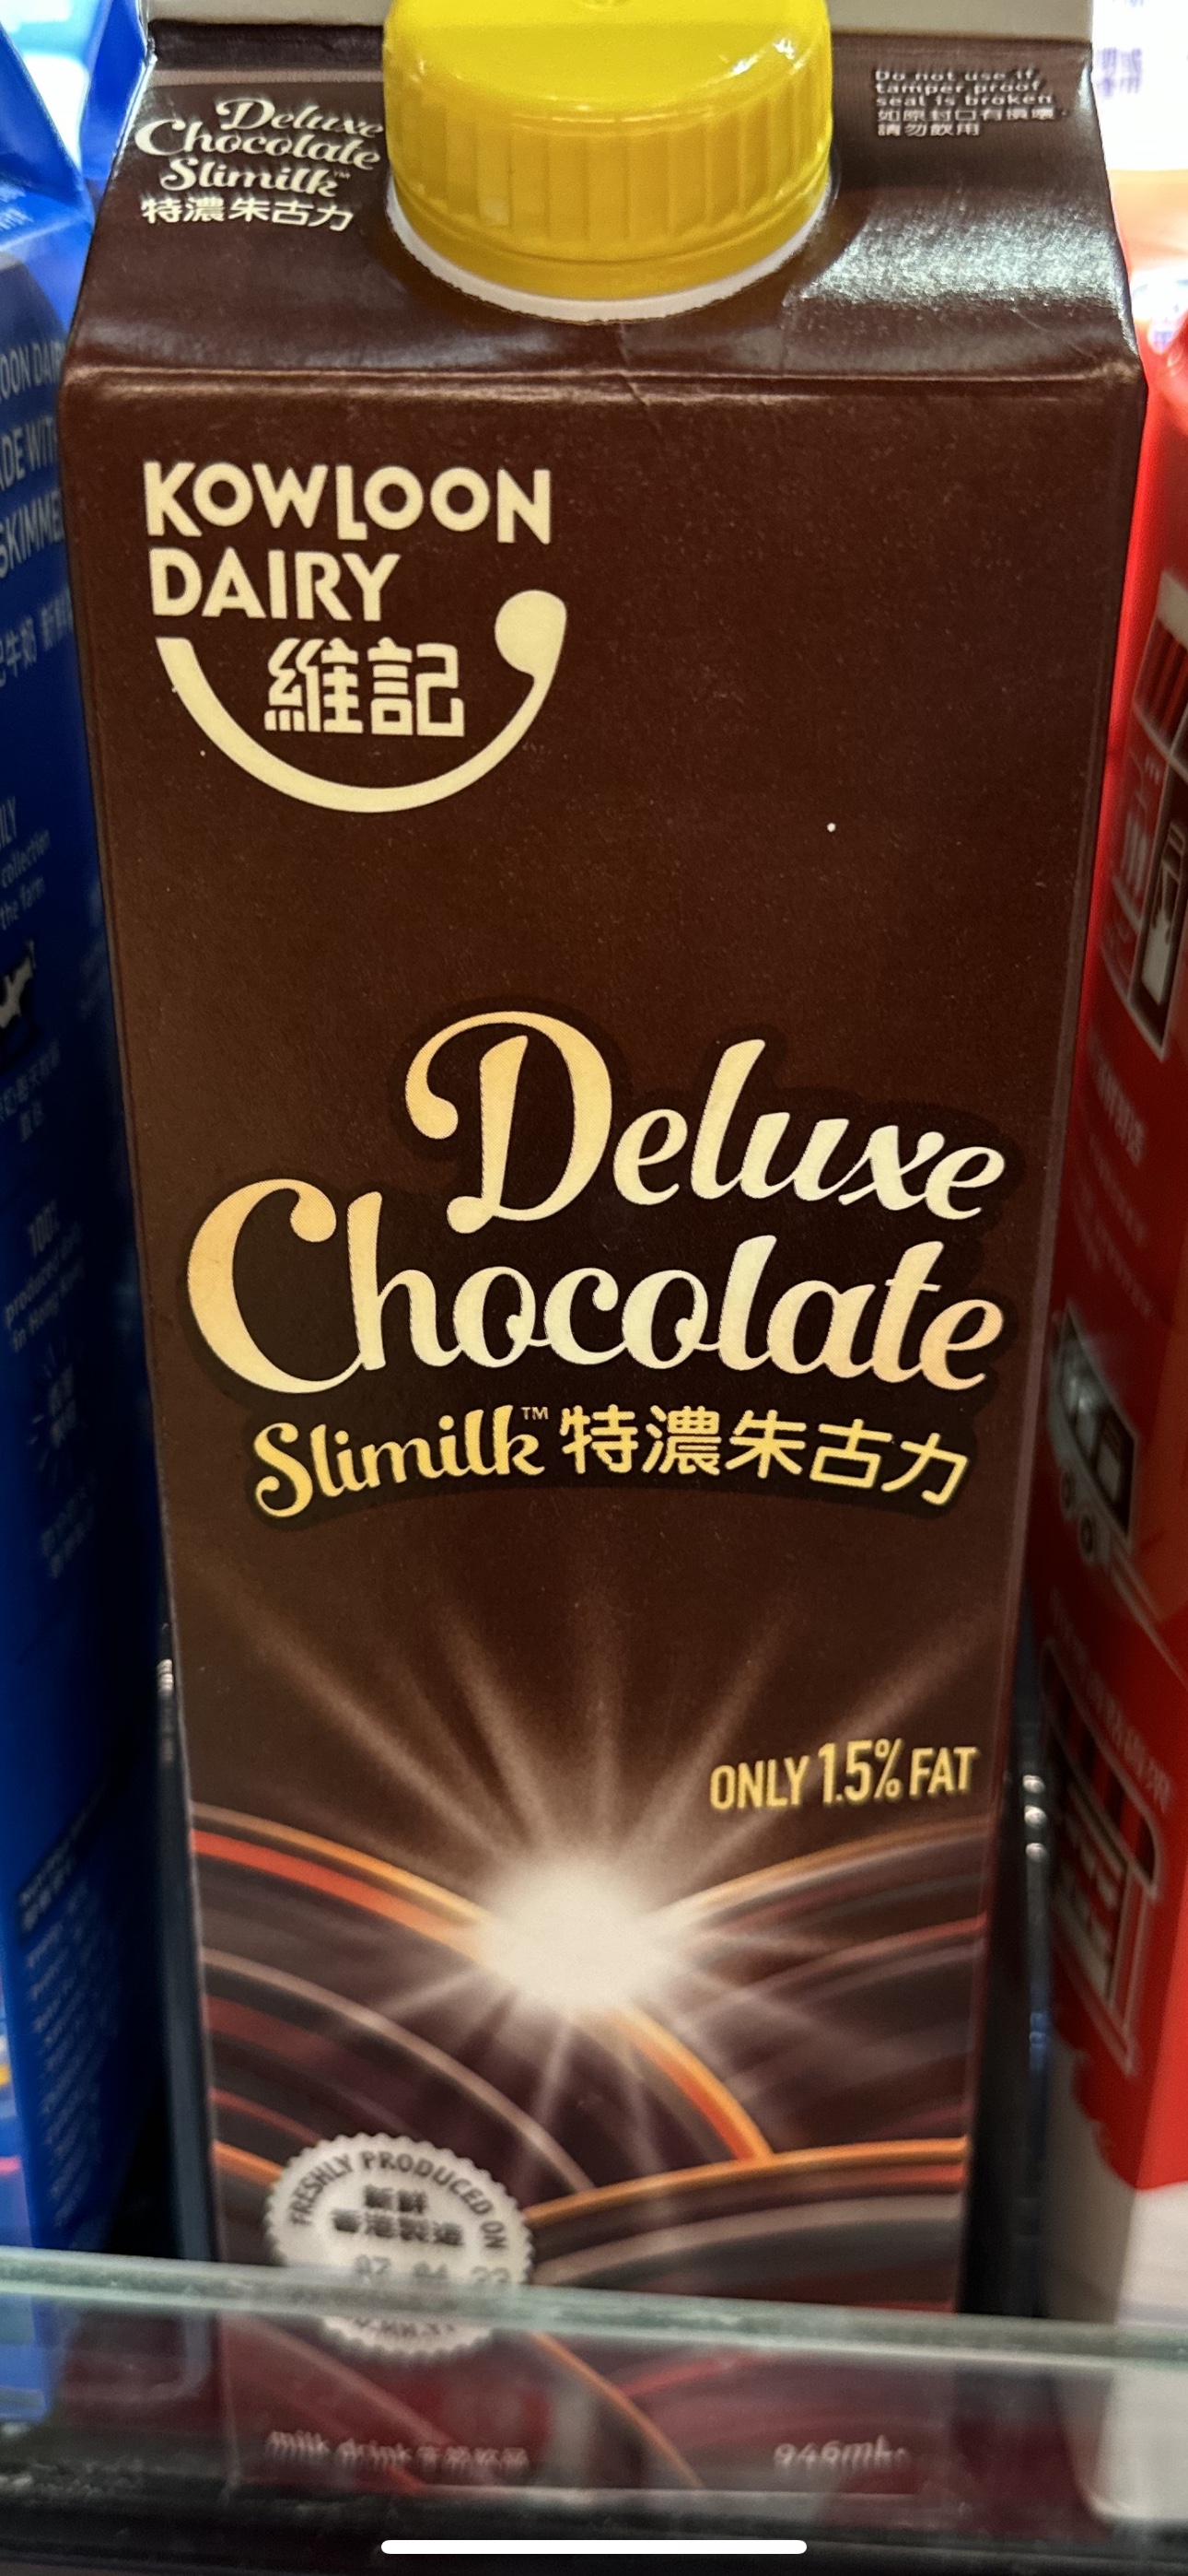 代购正品 香港制造 维记特浓巧克力低脂牛奶/特浓朱古力牛奶饮品